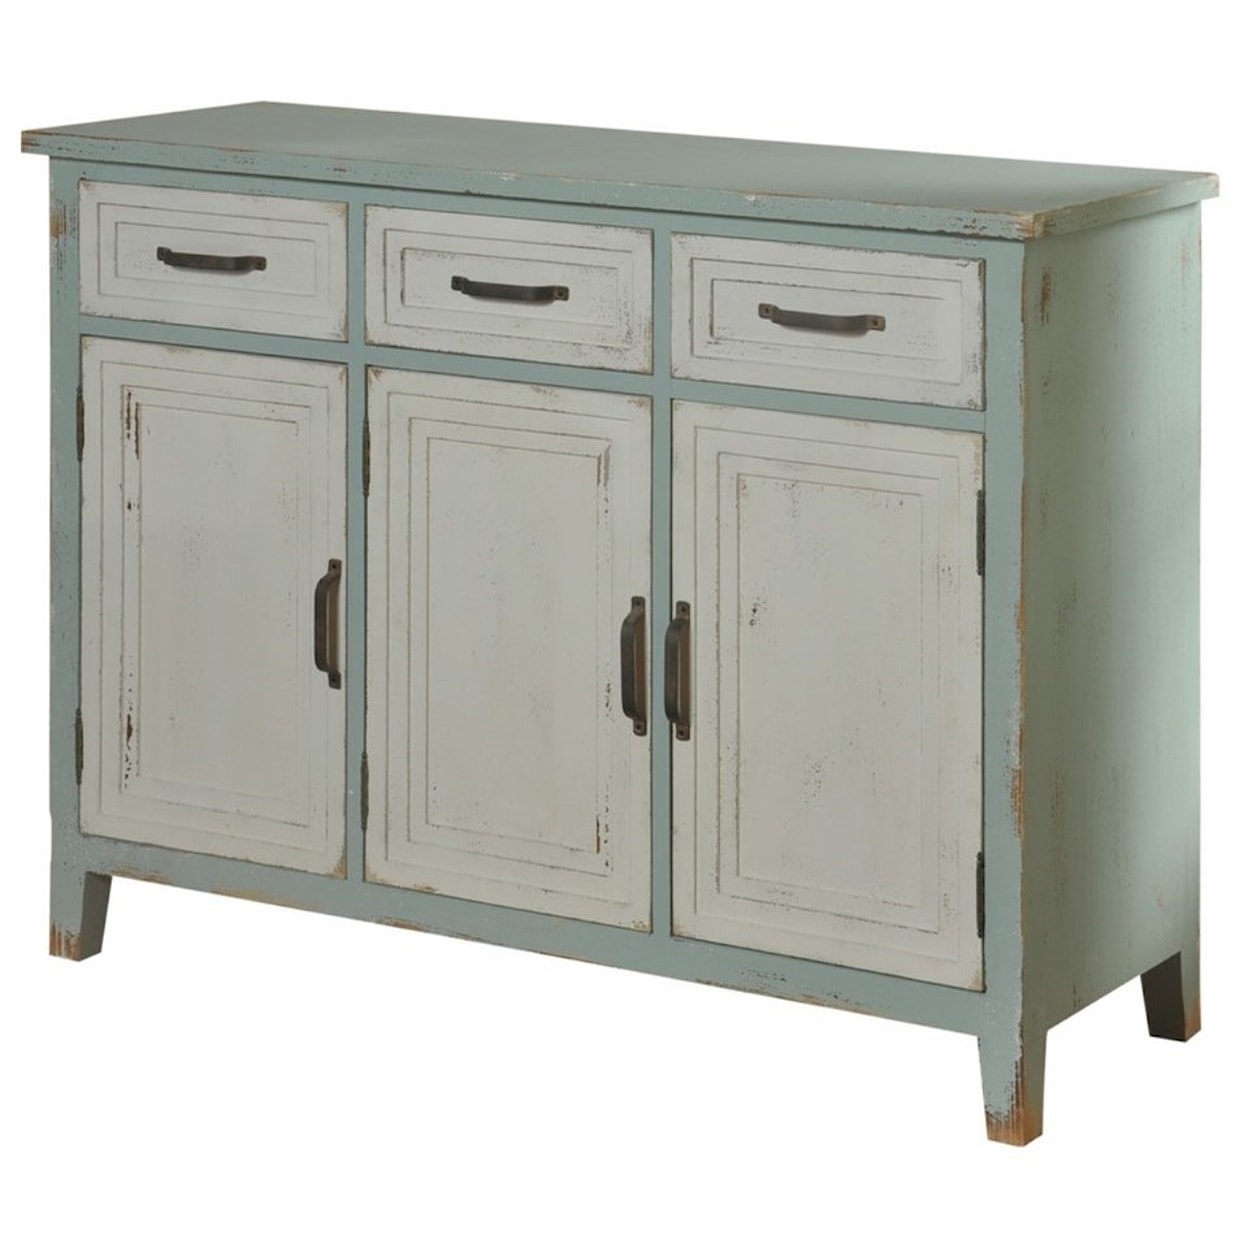 StyleCraft Occasional Cabinets 3 Drawer 3 Door Credenza